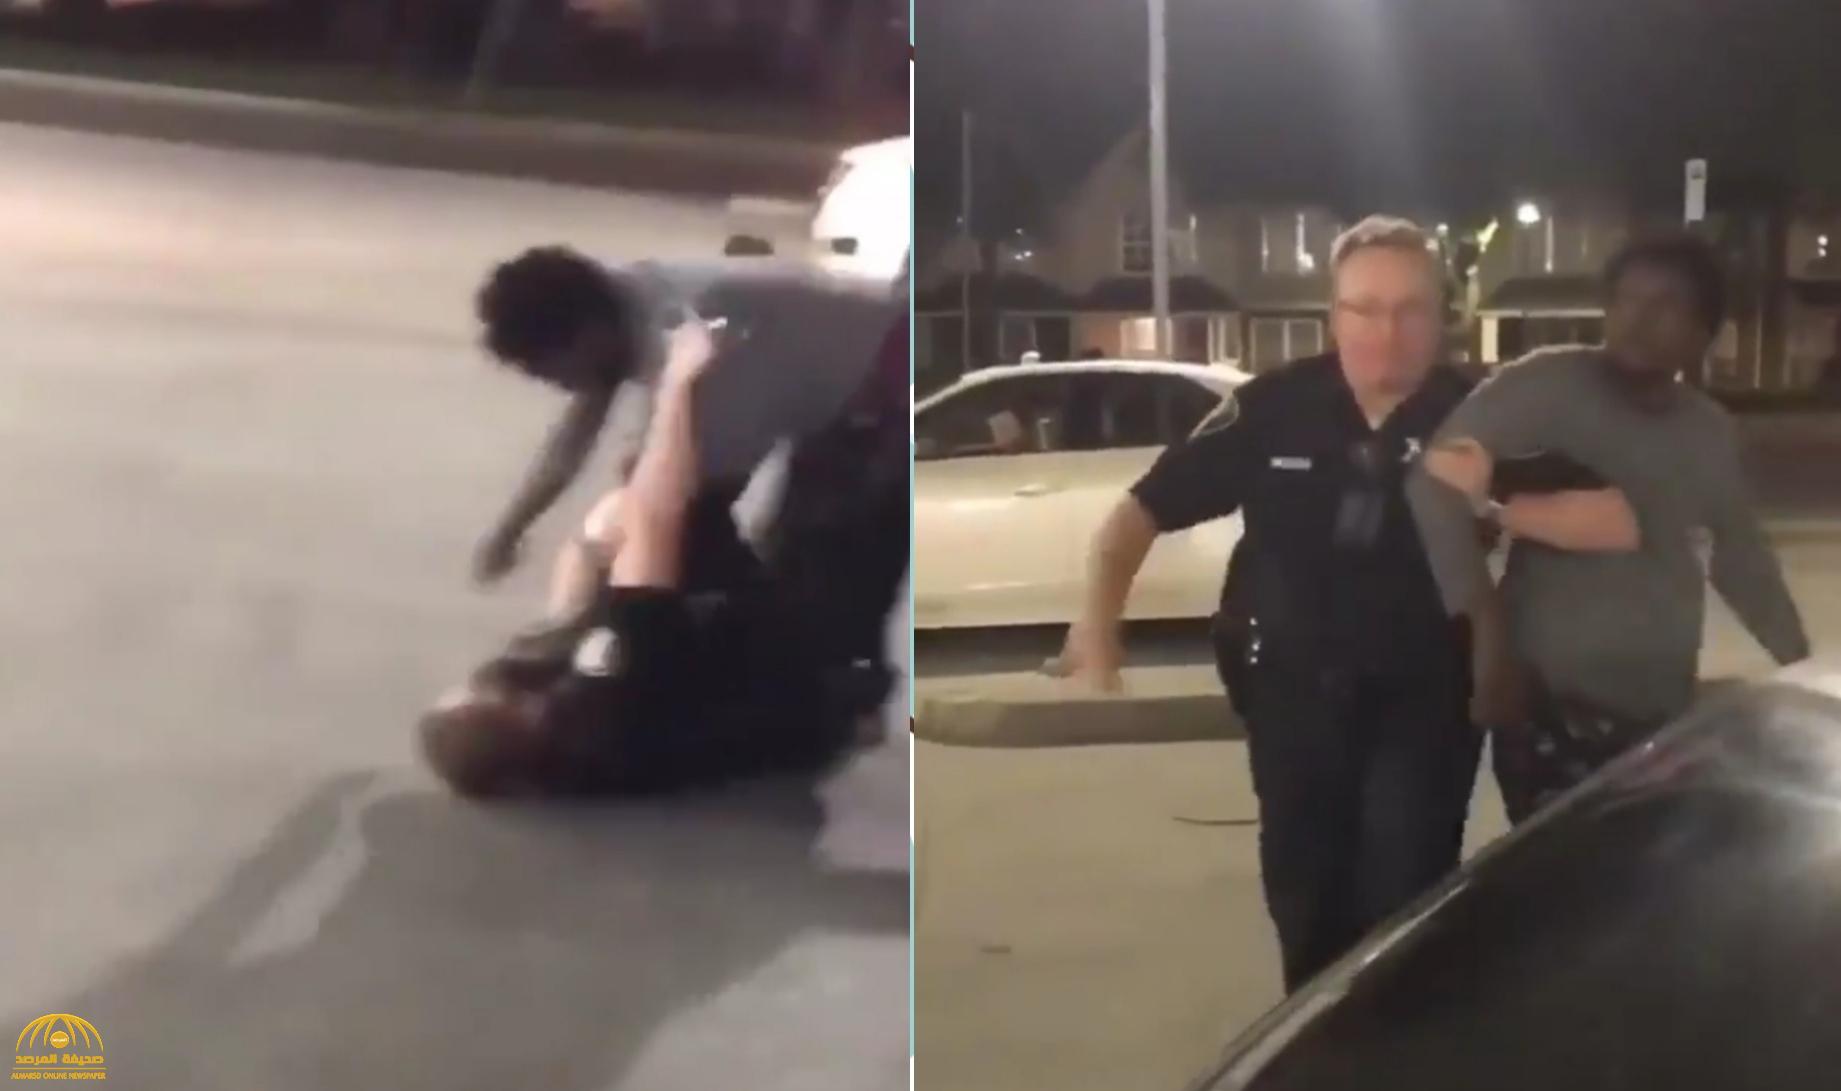 بالفيديو : شاب أسود يعتدي بالضرب على شرطي أمريكي  أثناء محاولة القبض عليه .. شاهد ردة فعل المارة